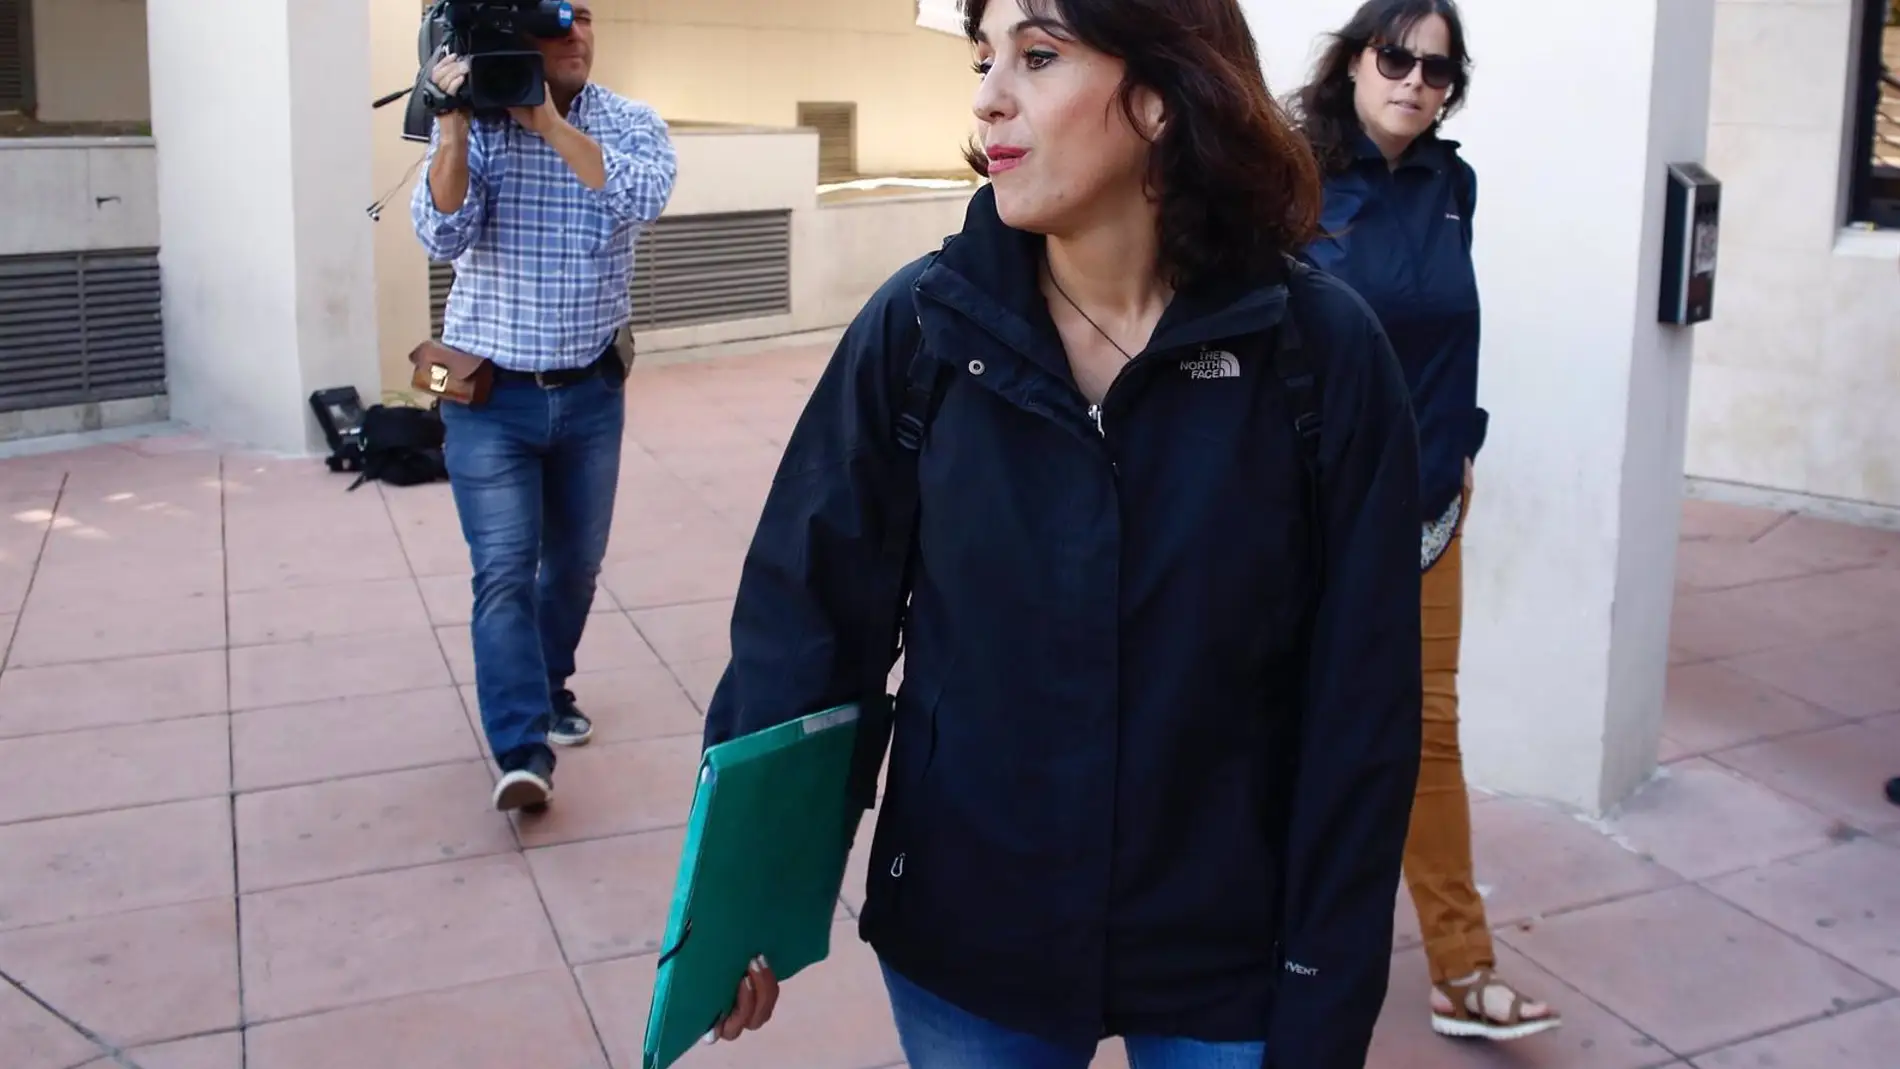 El equipo jurídico de Juana Rivas logra repetir el juicio que separó a los hermanos en Italia